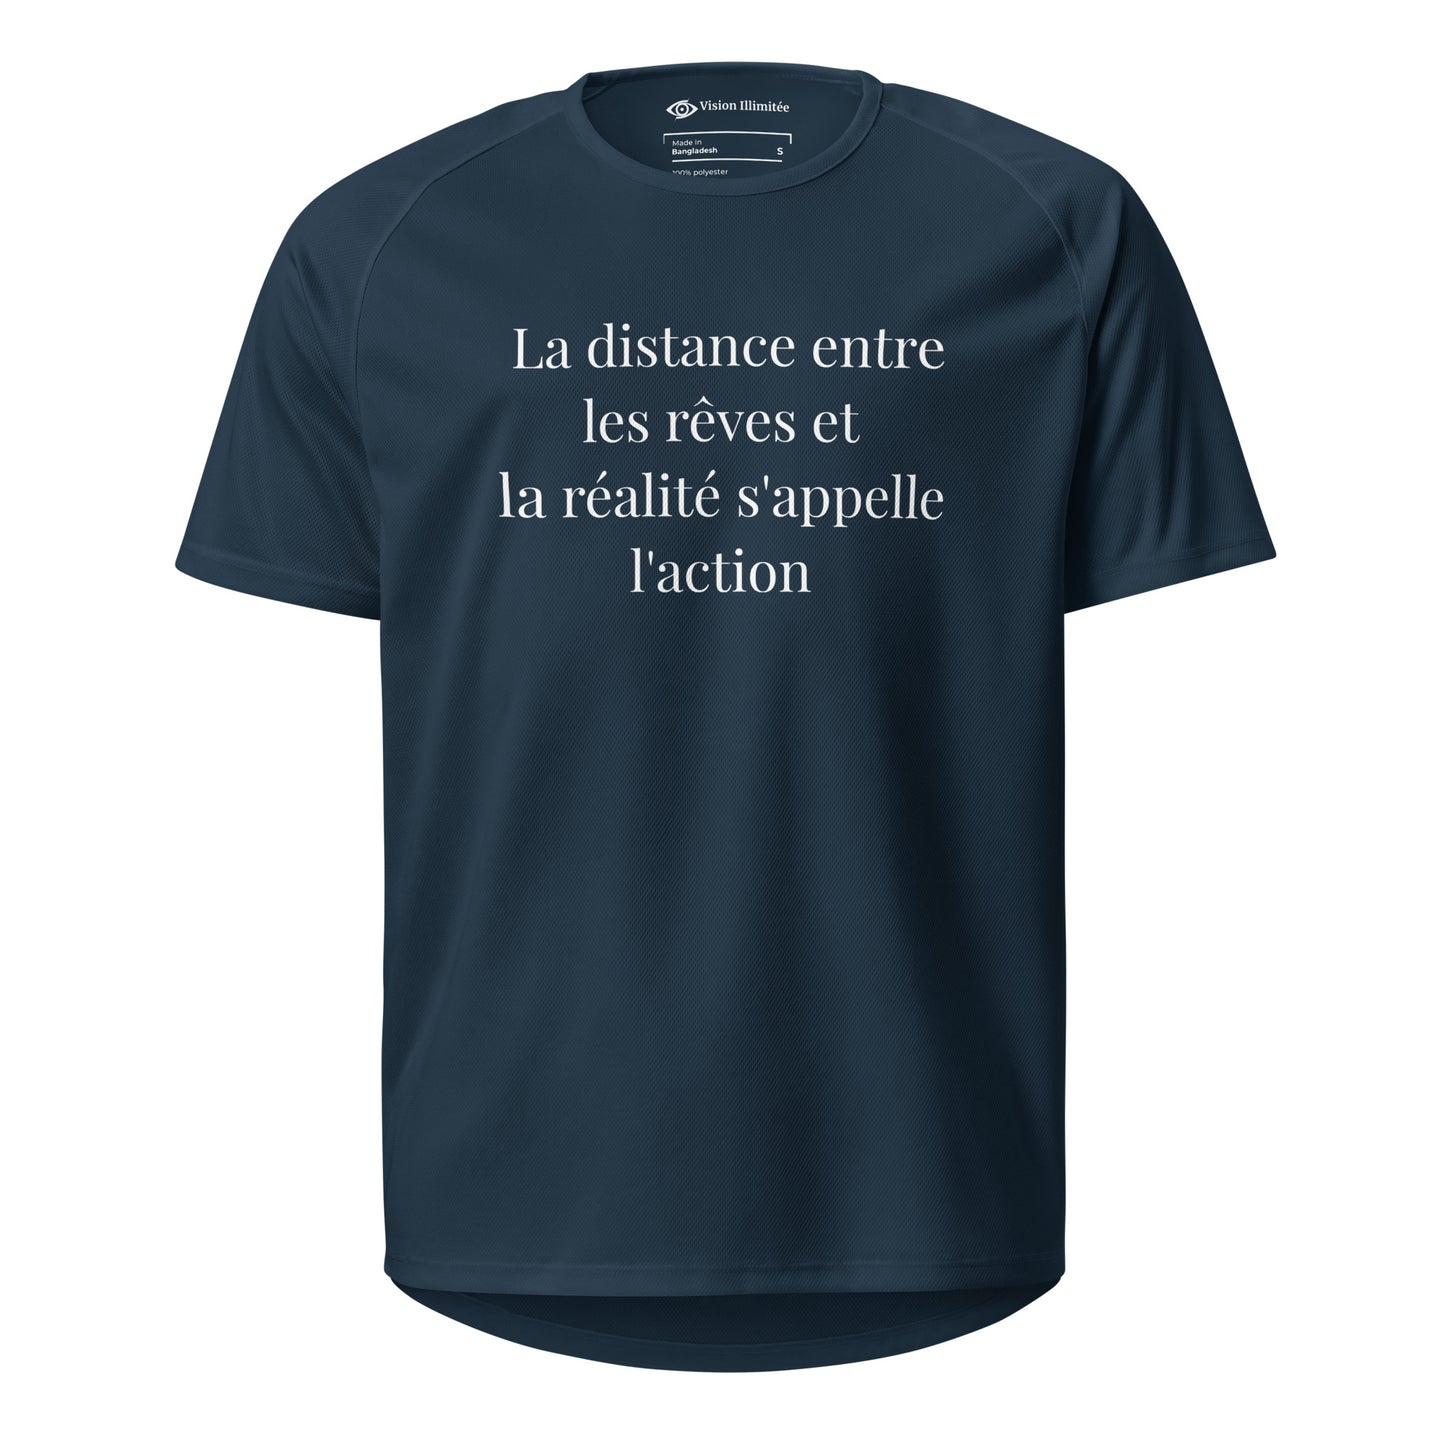 T-shirt de sport unisexe (La distance entre les rêves et la réalité s'appelle l'action)